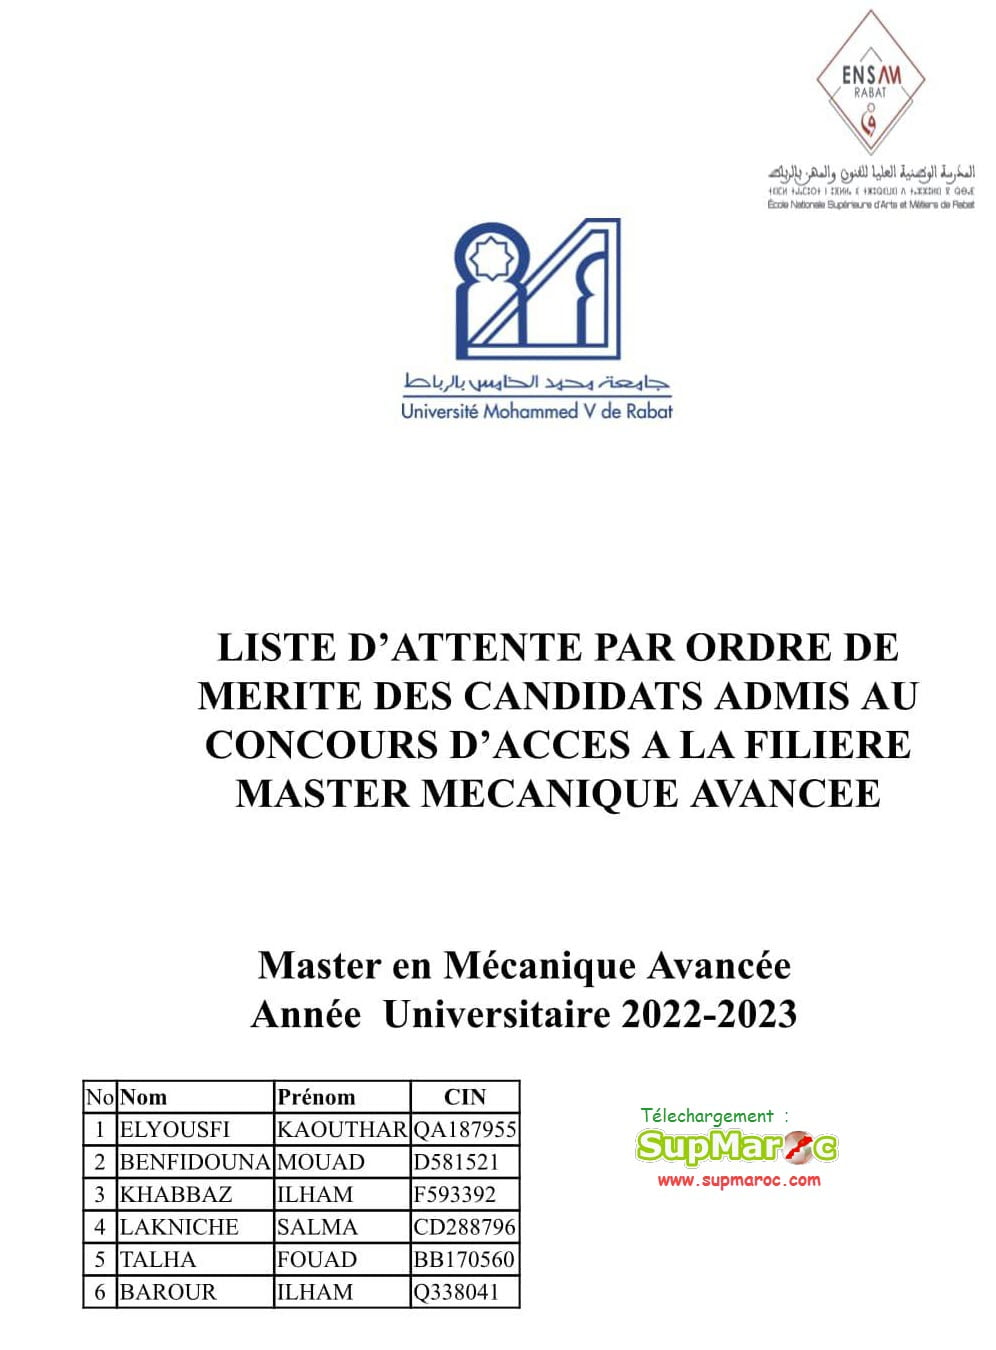 Résultats ENSAM Rabat Master GE 2022-2023